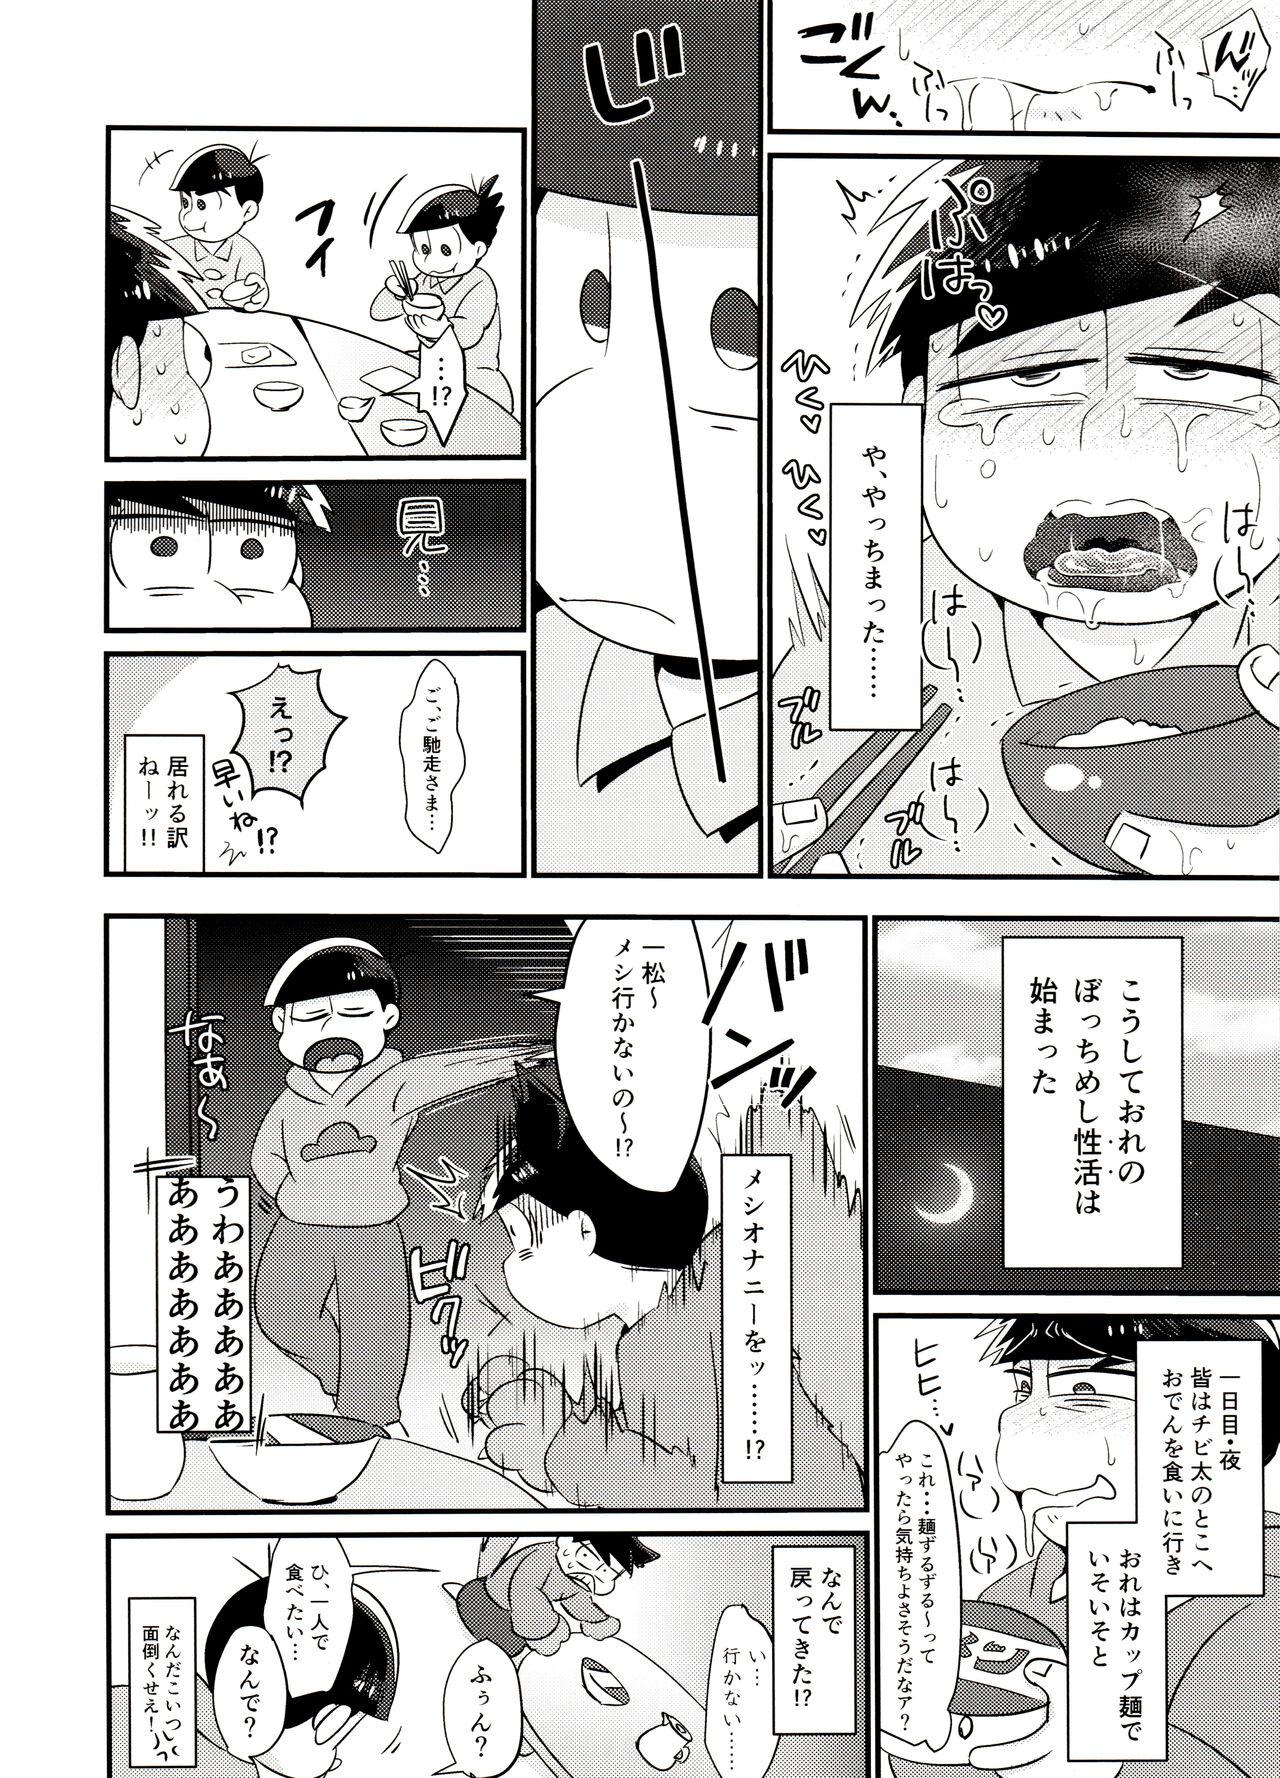 Desperate Ore no shita ga saikin okashī!! - Osomatsu san Gostosas - Page 7